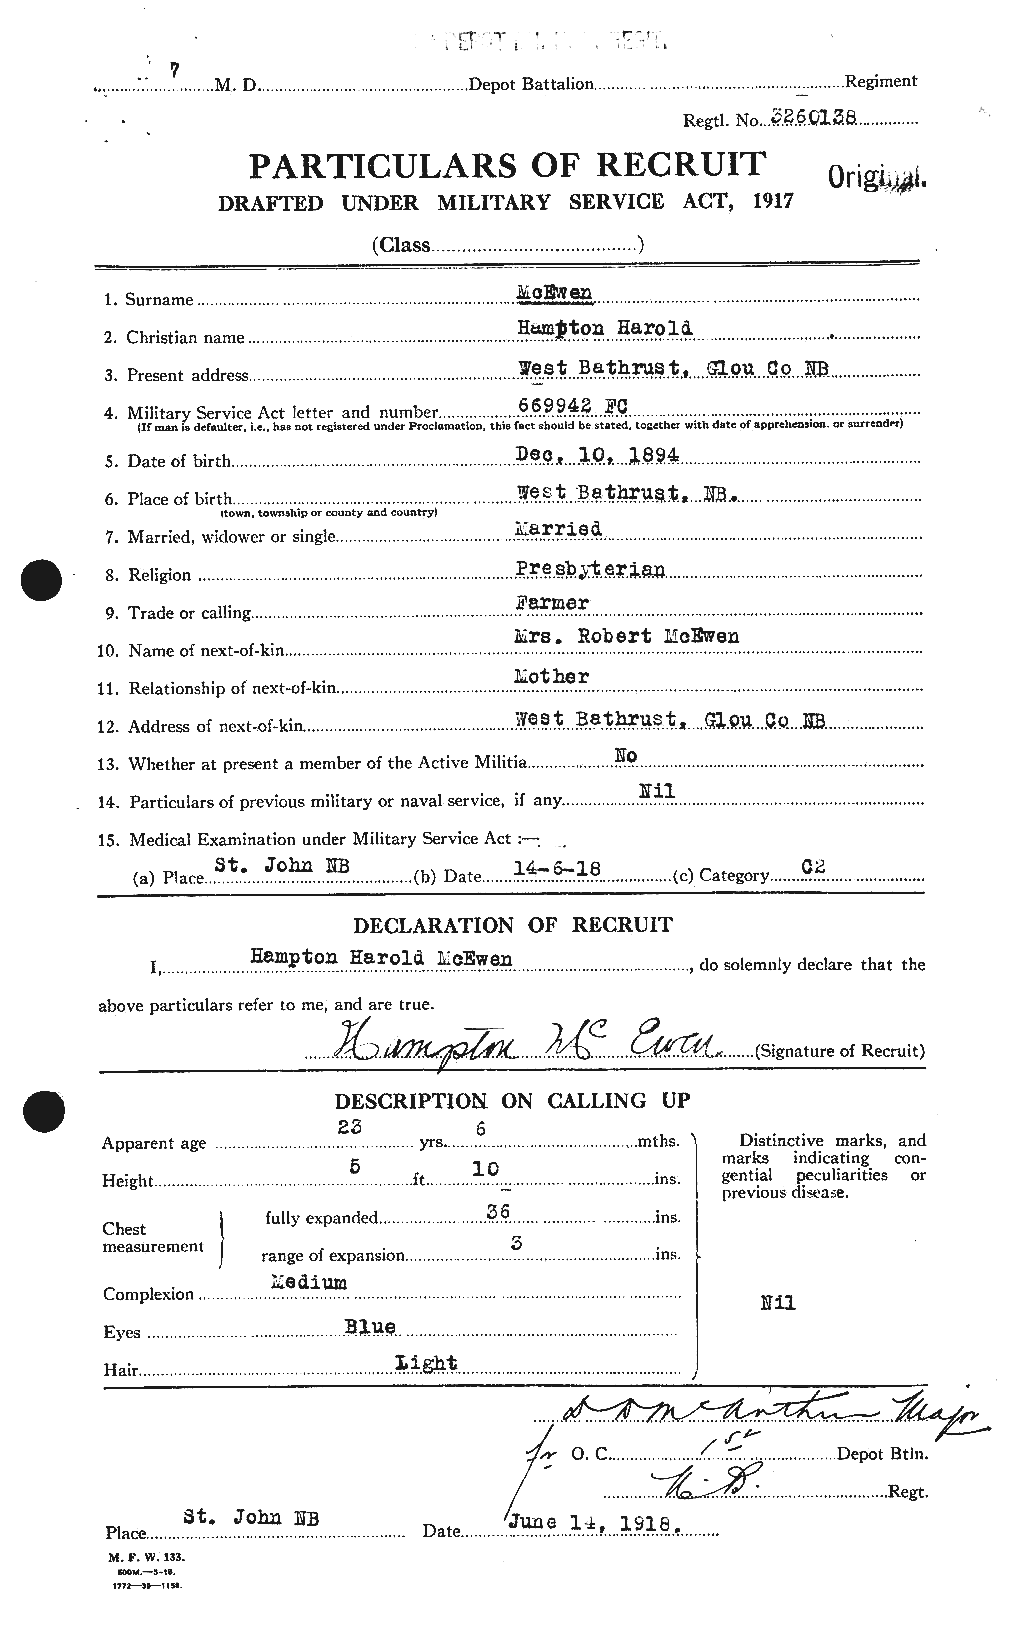 Dossiers du Personnel de la Première Guerre mondiale - CEC 520929a